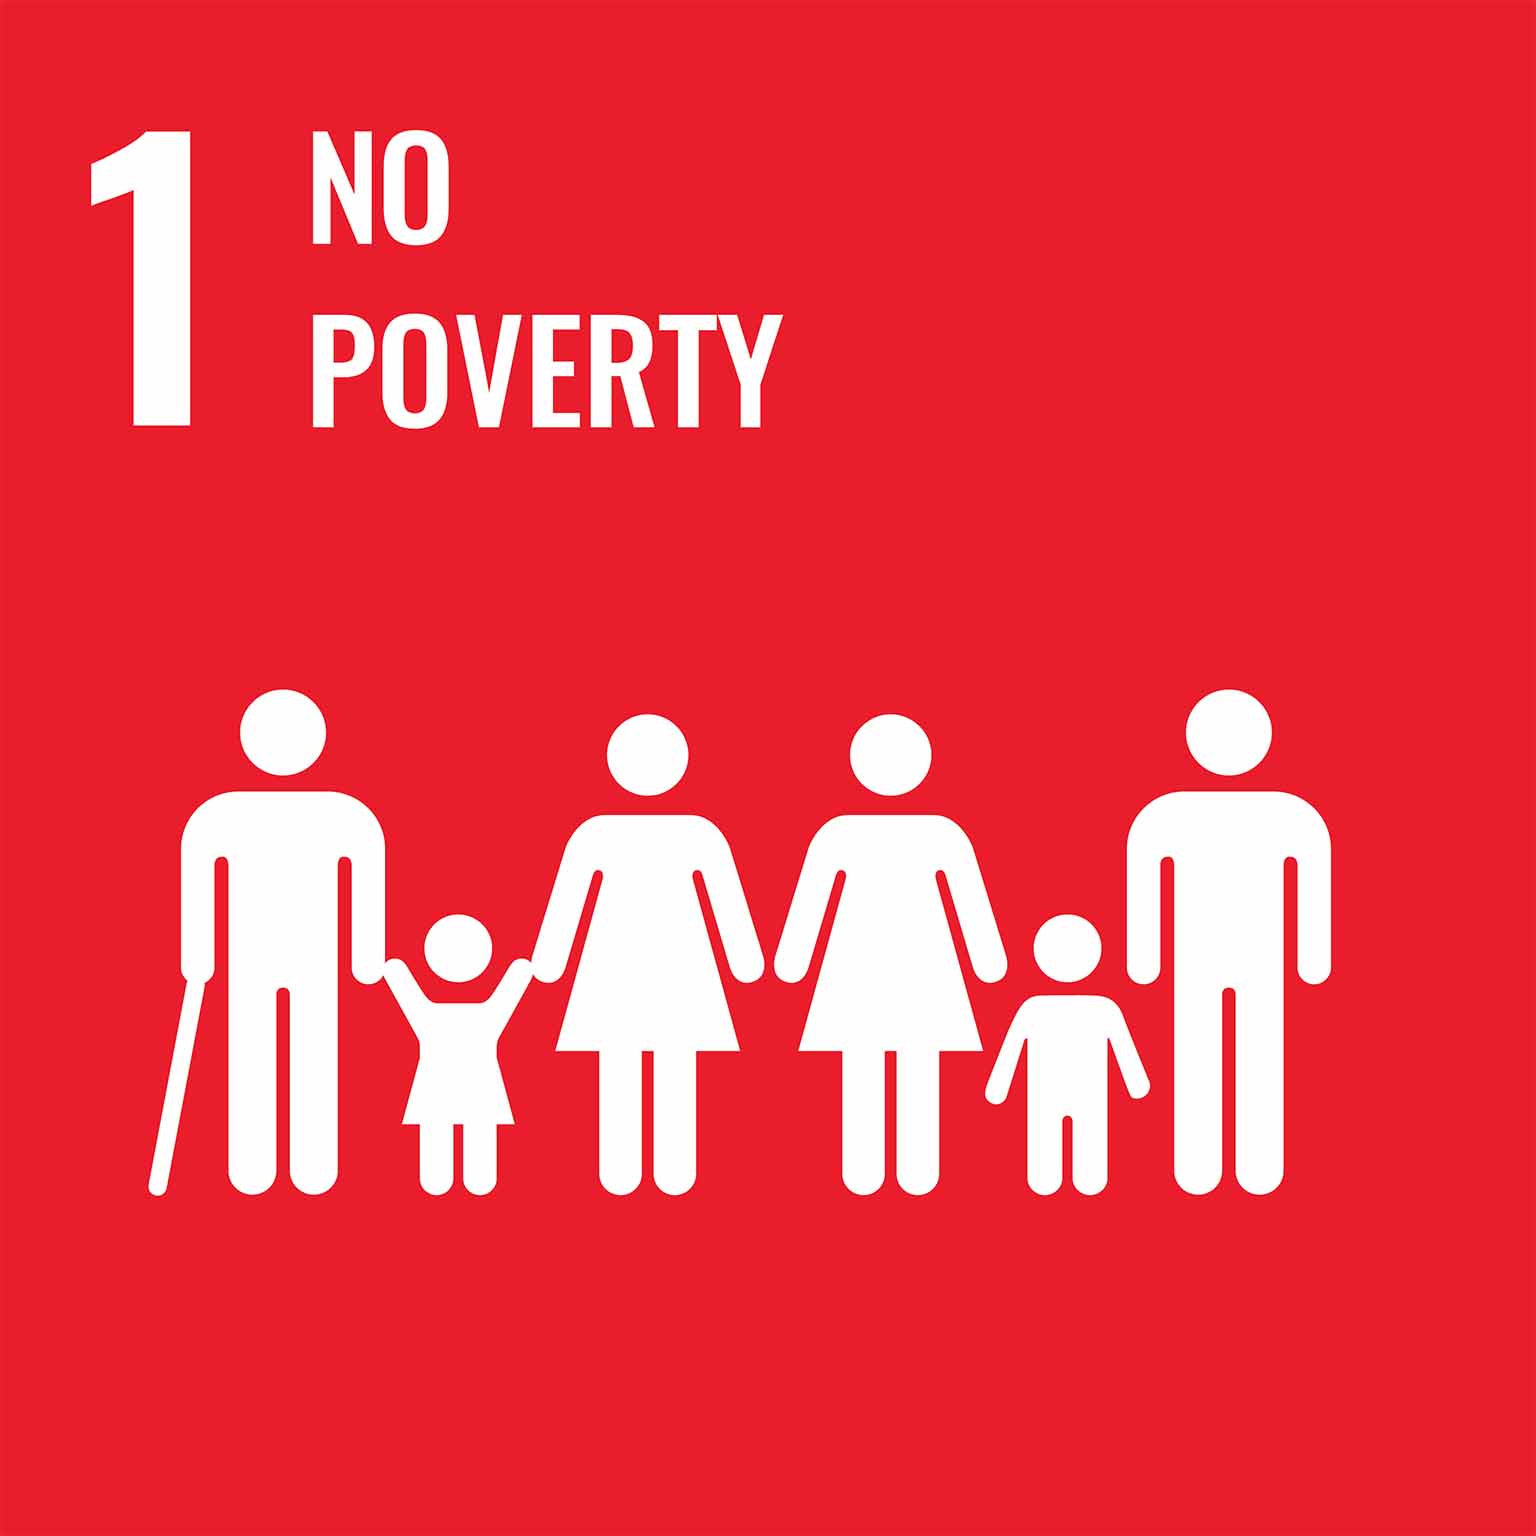 UN Goal: No Poverty